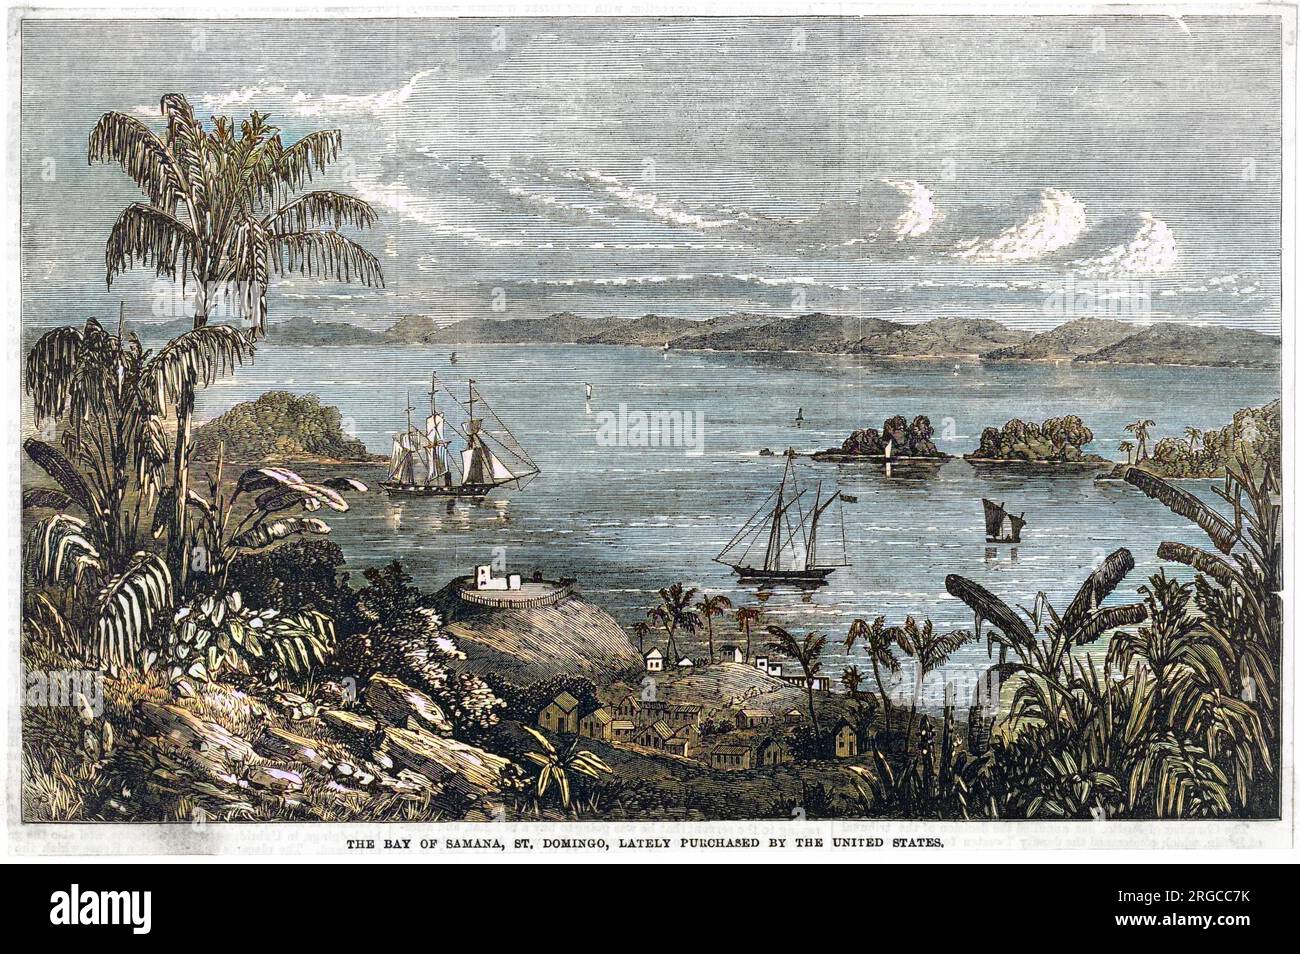 The Bay of Samana, Santo Domingo, 1868 von den Vereinigten Staaten gekauft. Stockfoto